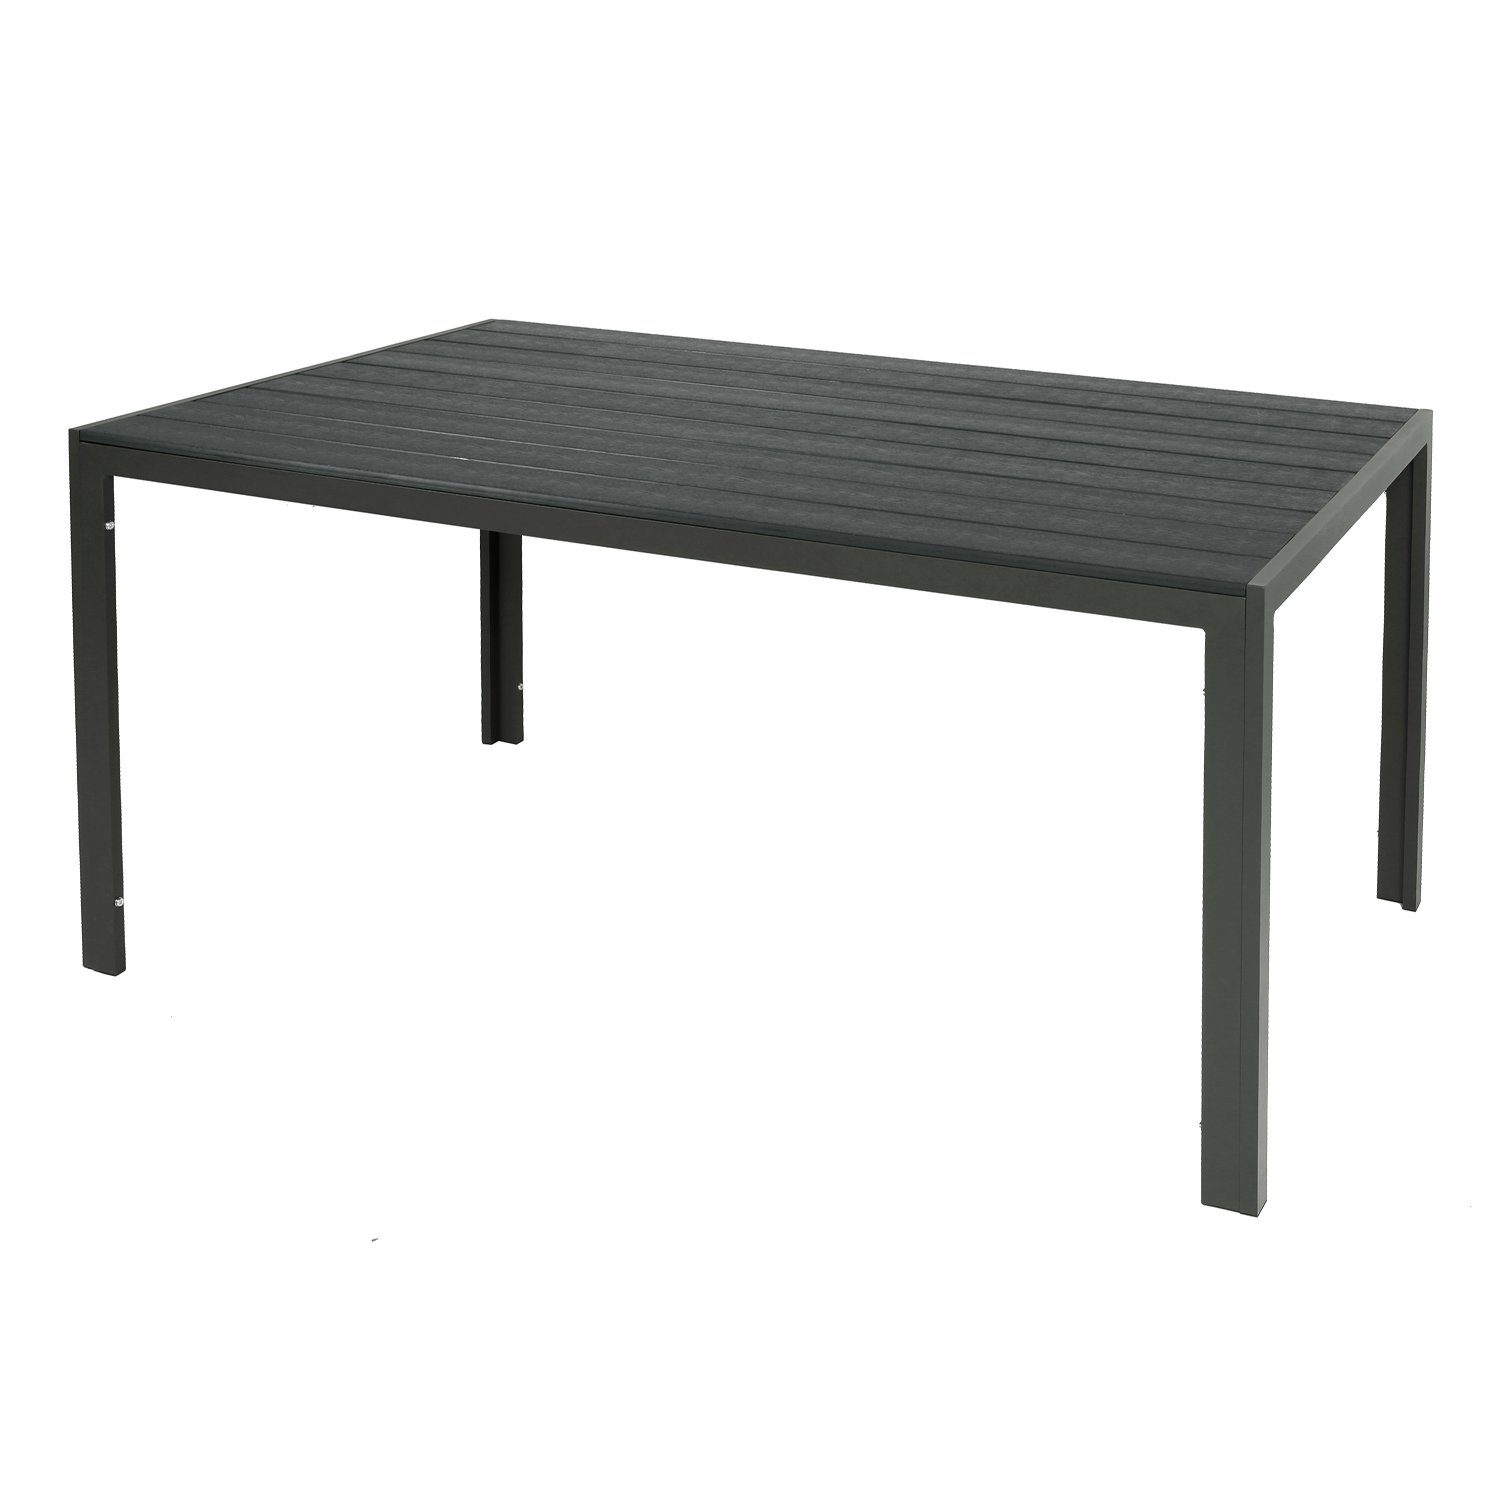 INDA-Exclusiv Küchentisch Großer Non-Wood Gartentisch aus Aluminium anthrazit / grau 180x90cm